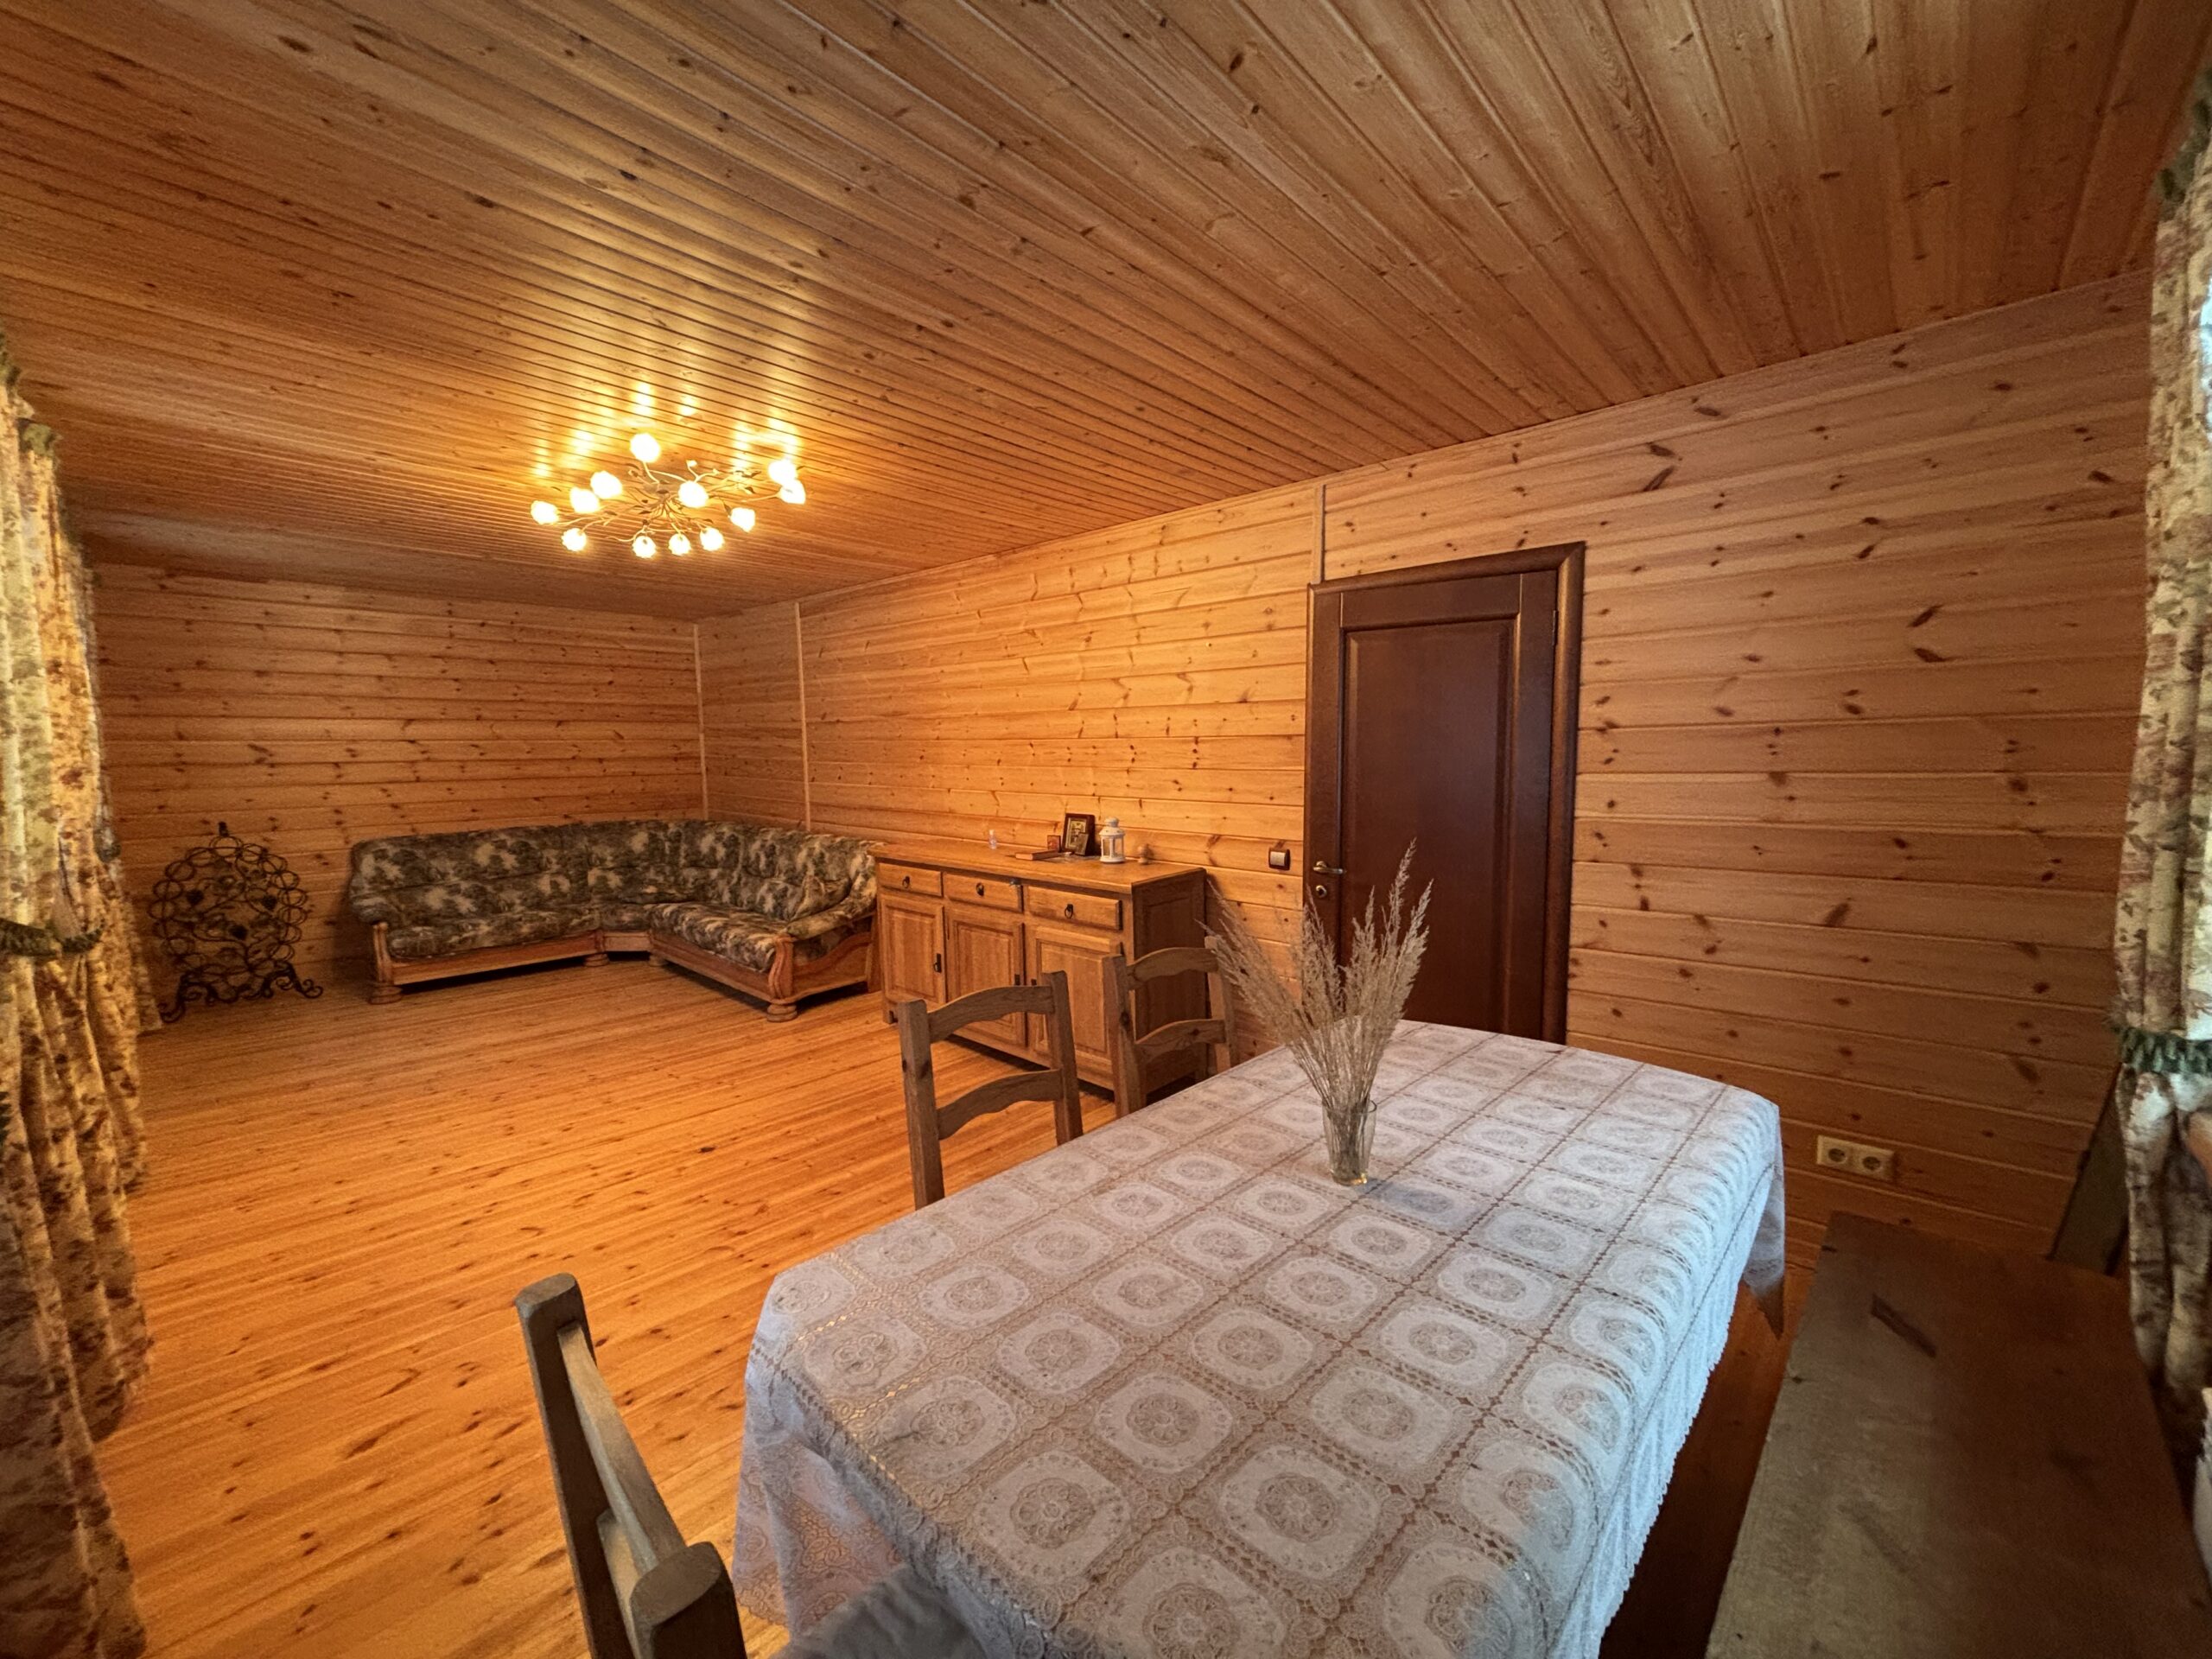 Фото зал первый этаж Продажа дома в лесном массиве в деревне у реки Угра в Корокино Калужская область